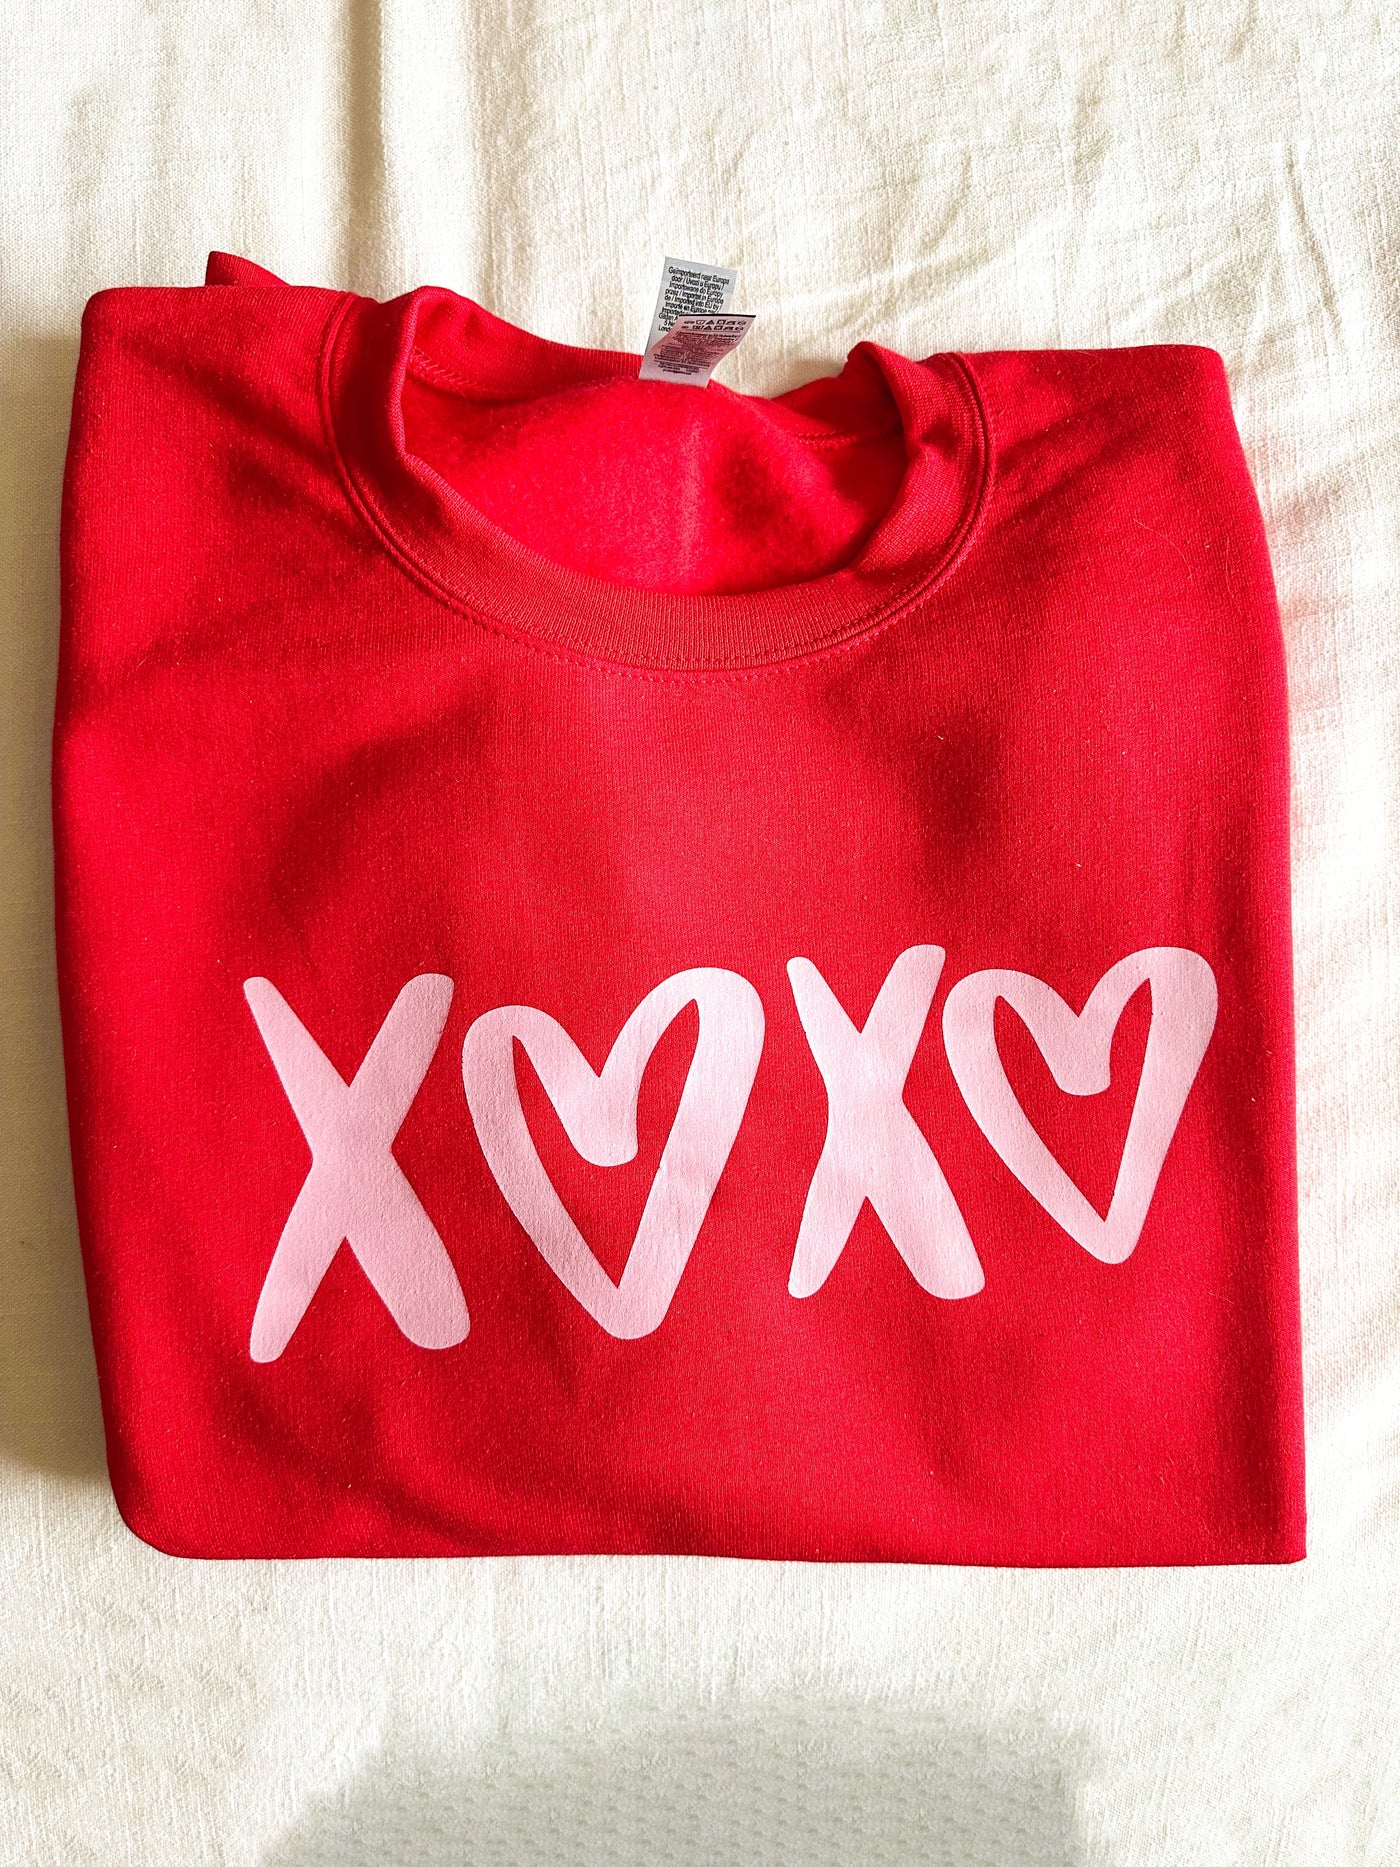 "XOXO" Sweatshirt